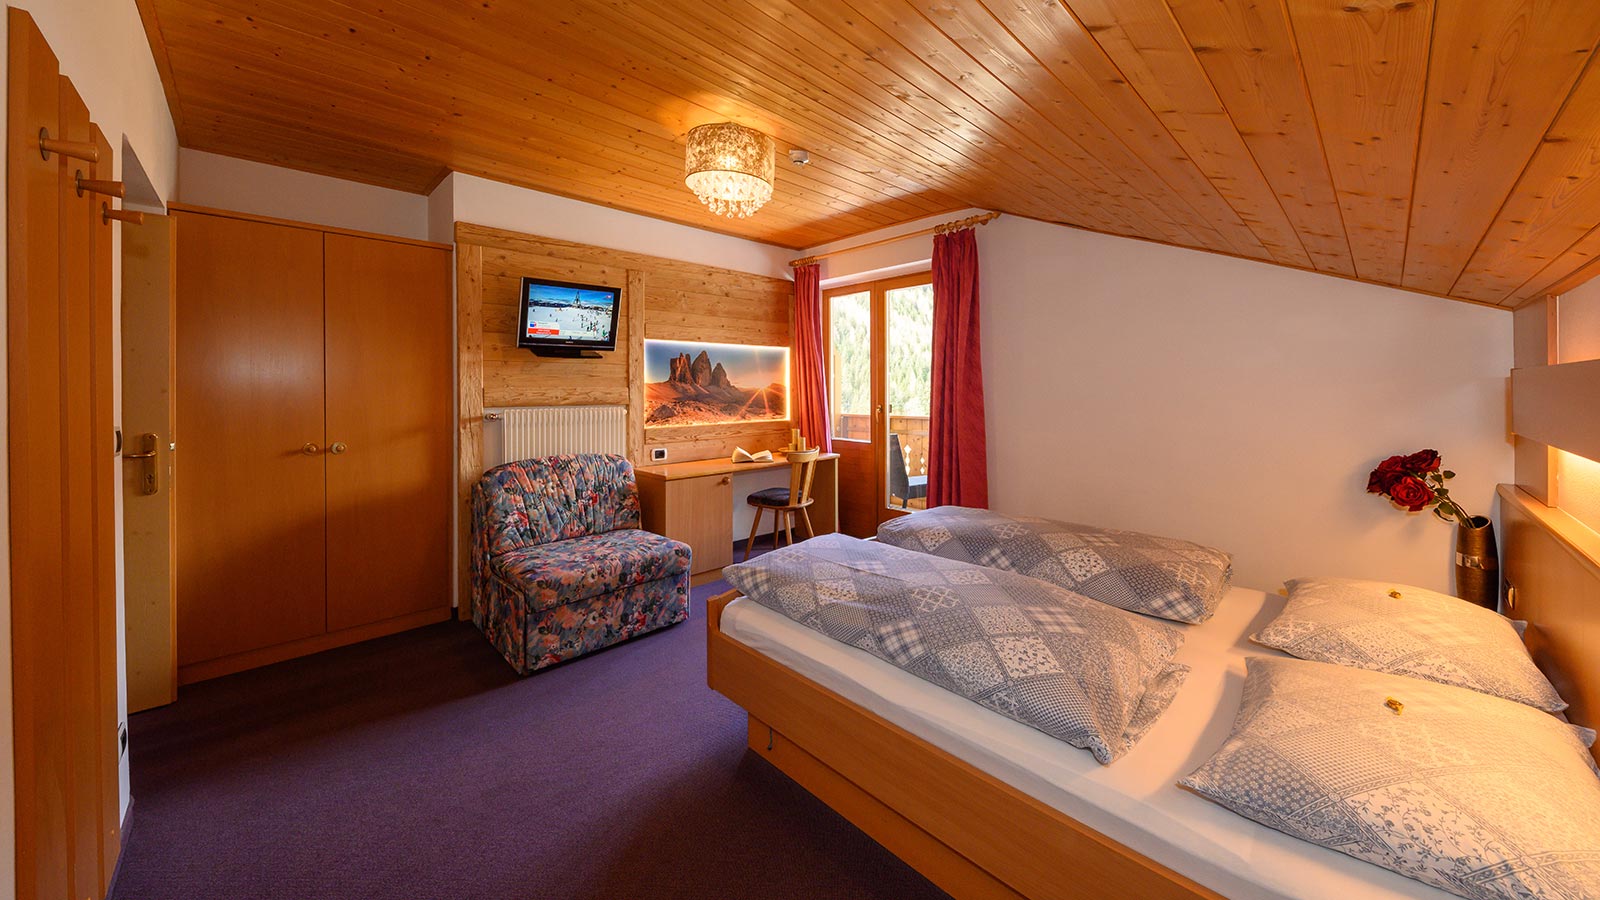 Blick auf ein Bett in einem der Zimmer des Hotels Der Wiesenhof in Vals